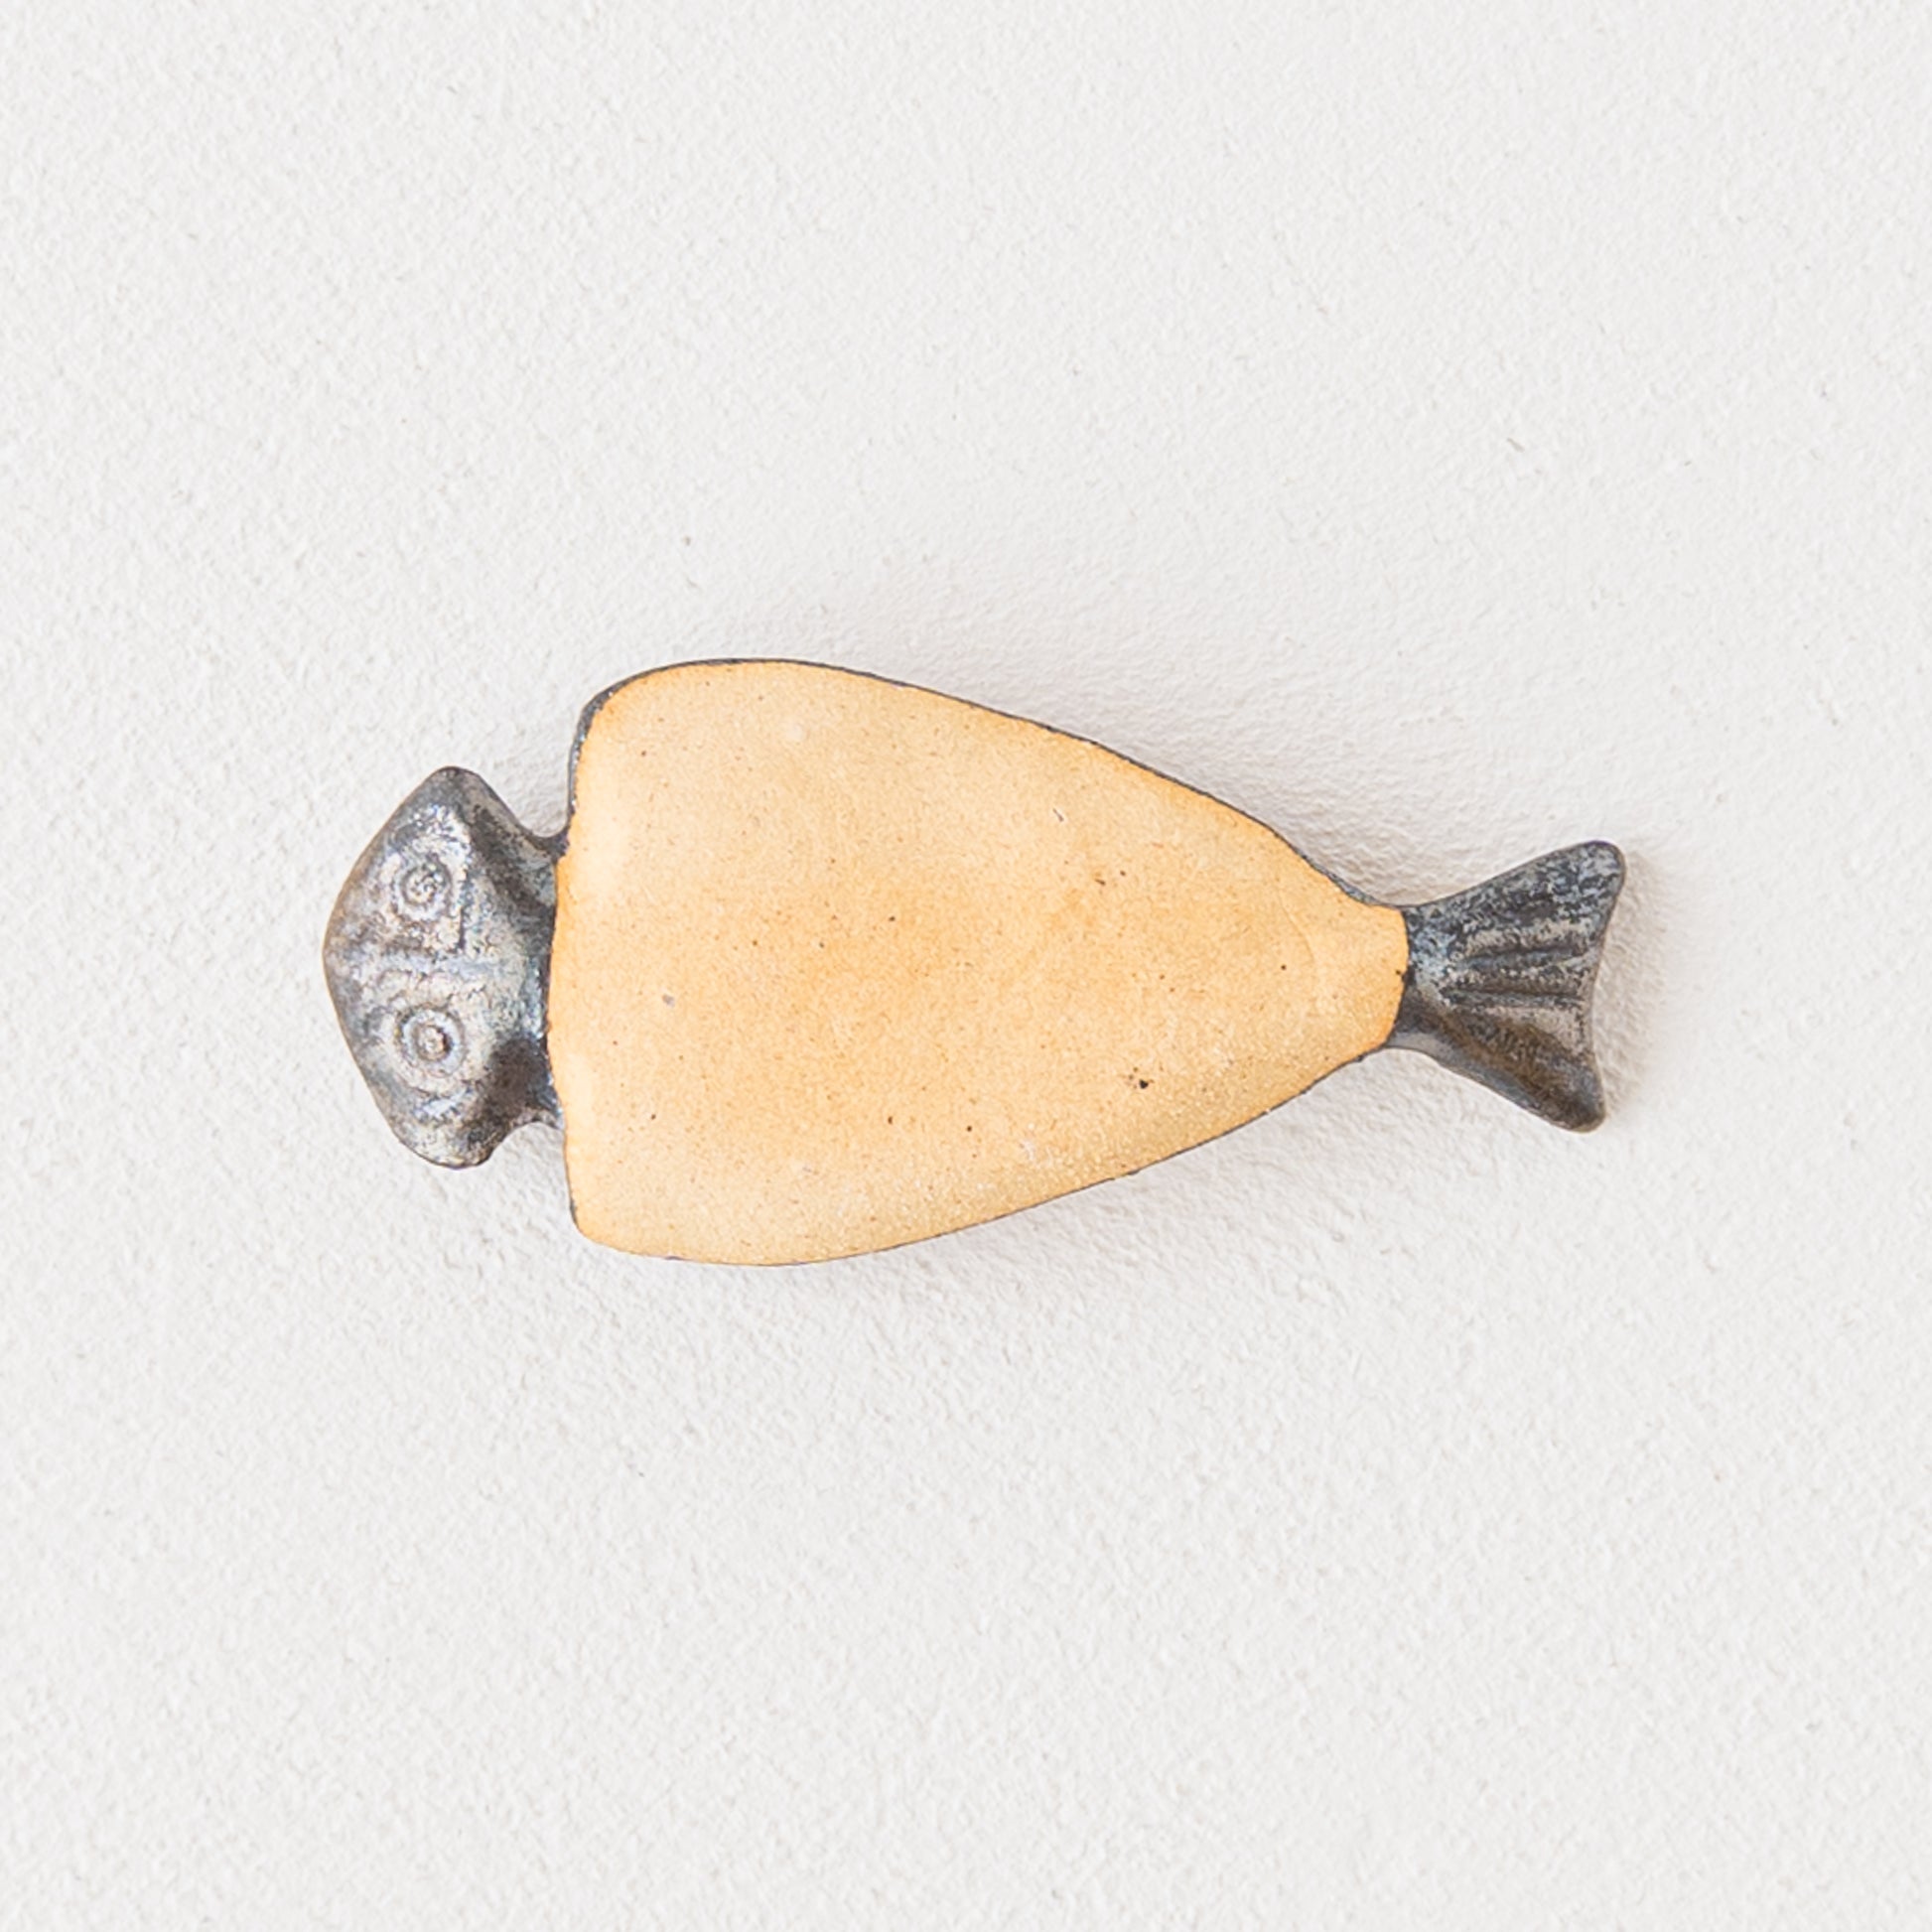 ほっこりかわいい美濃焼イホシロ窯の焼き魚シリーズの箸置き